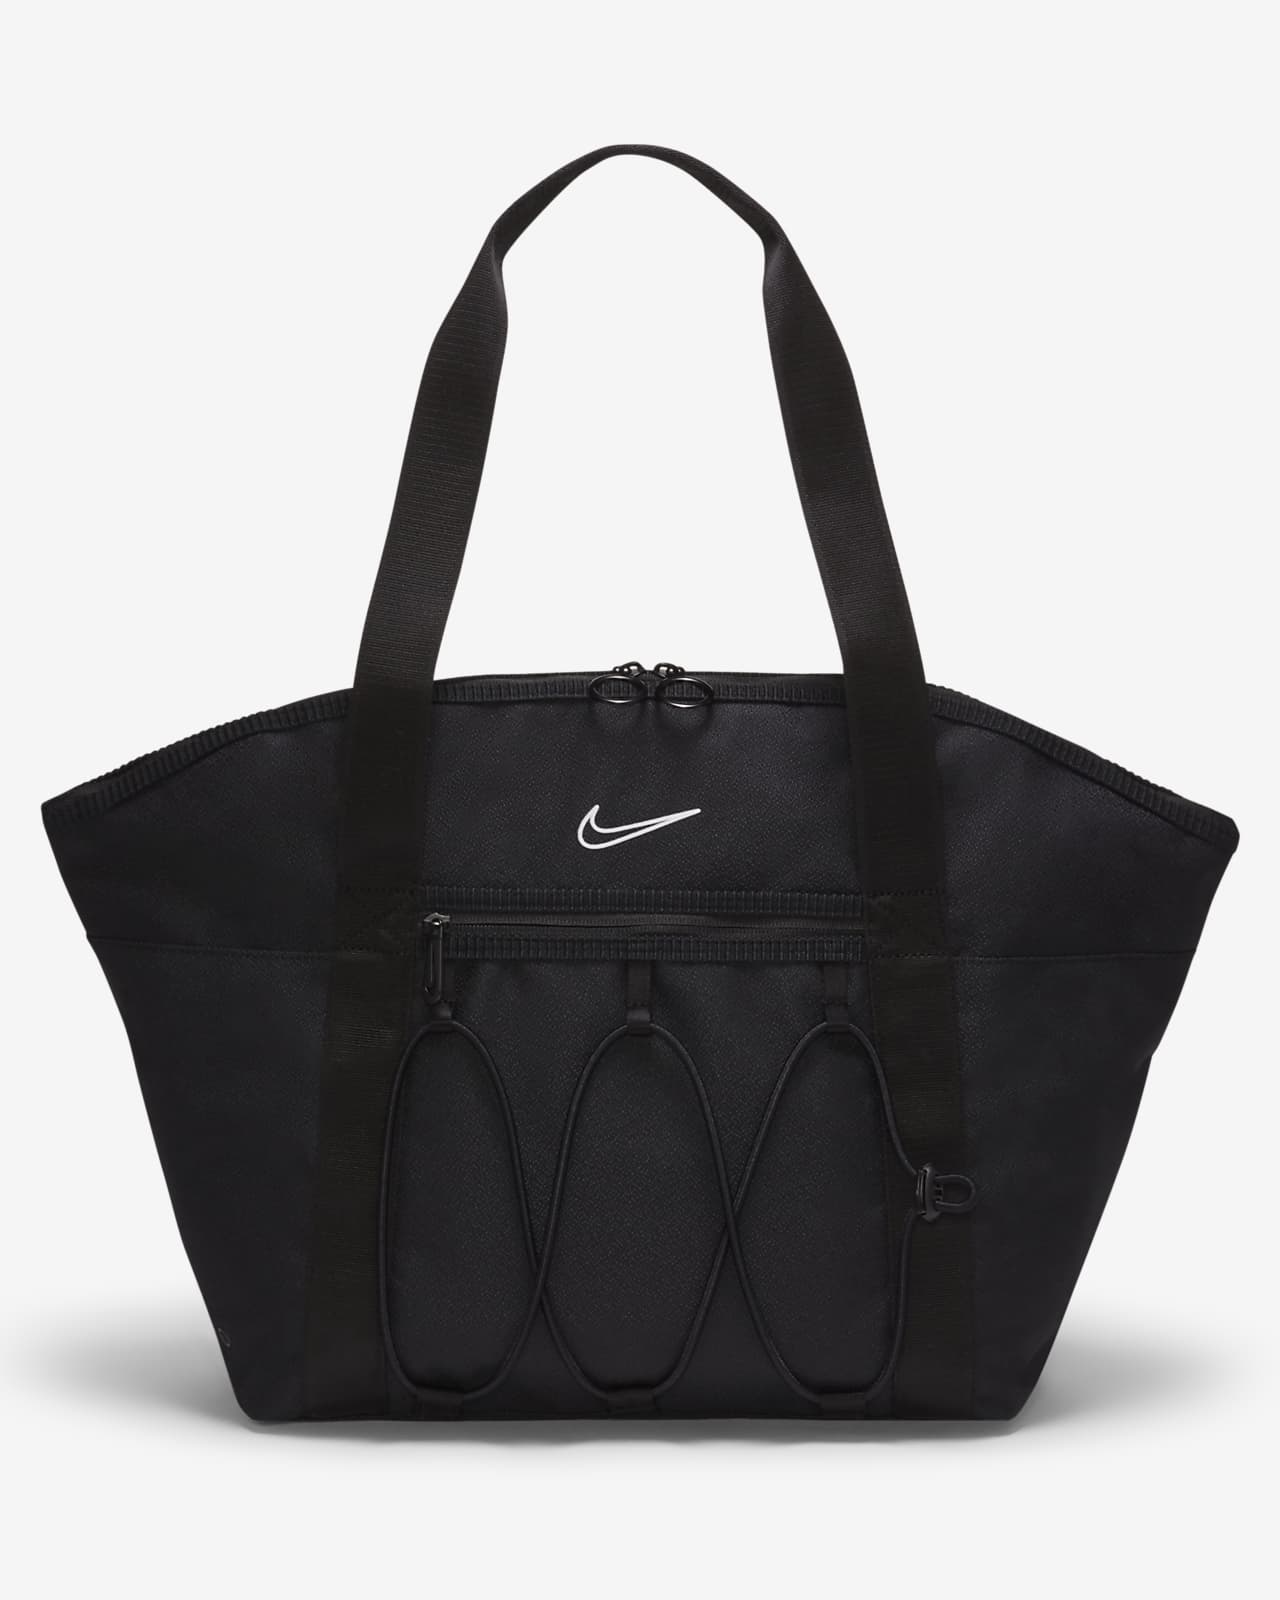 Tote bag de training Nike One pour Femme (18 L)